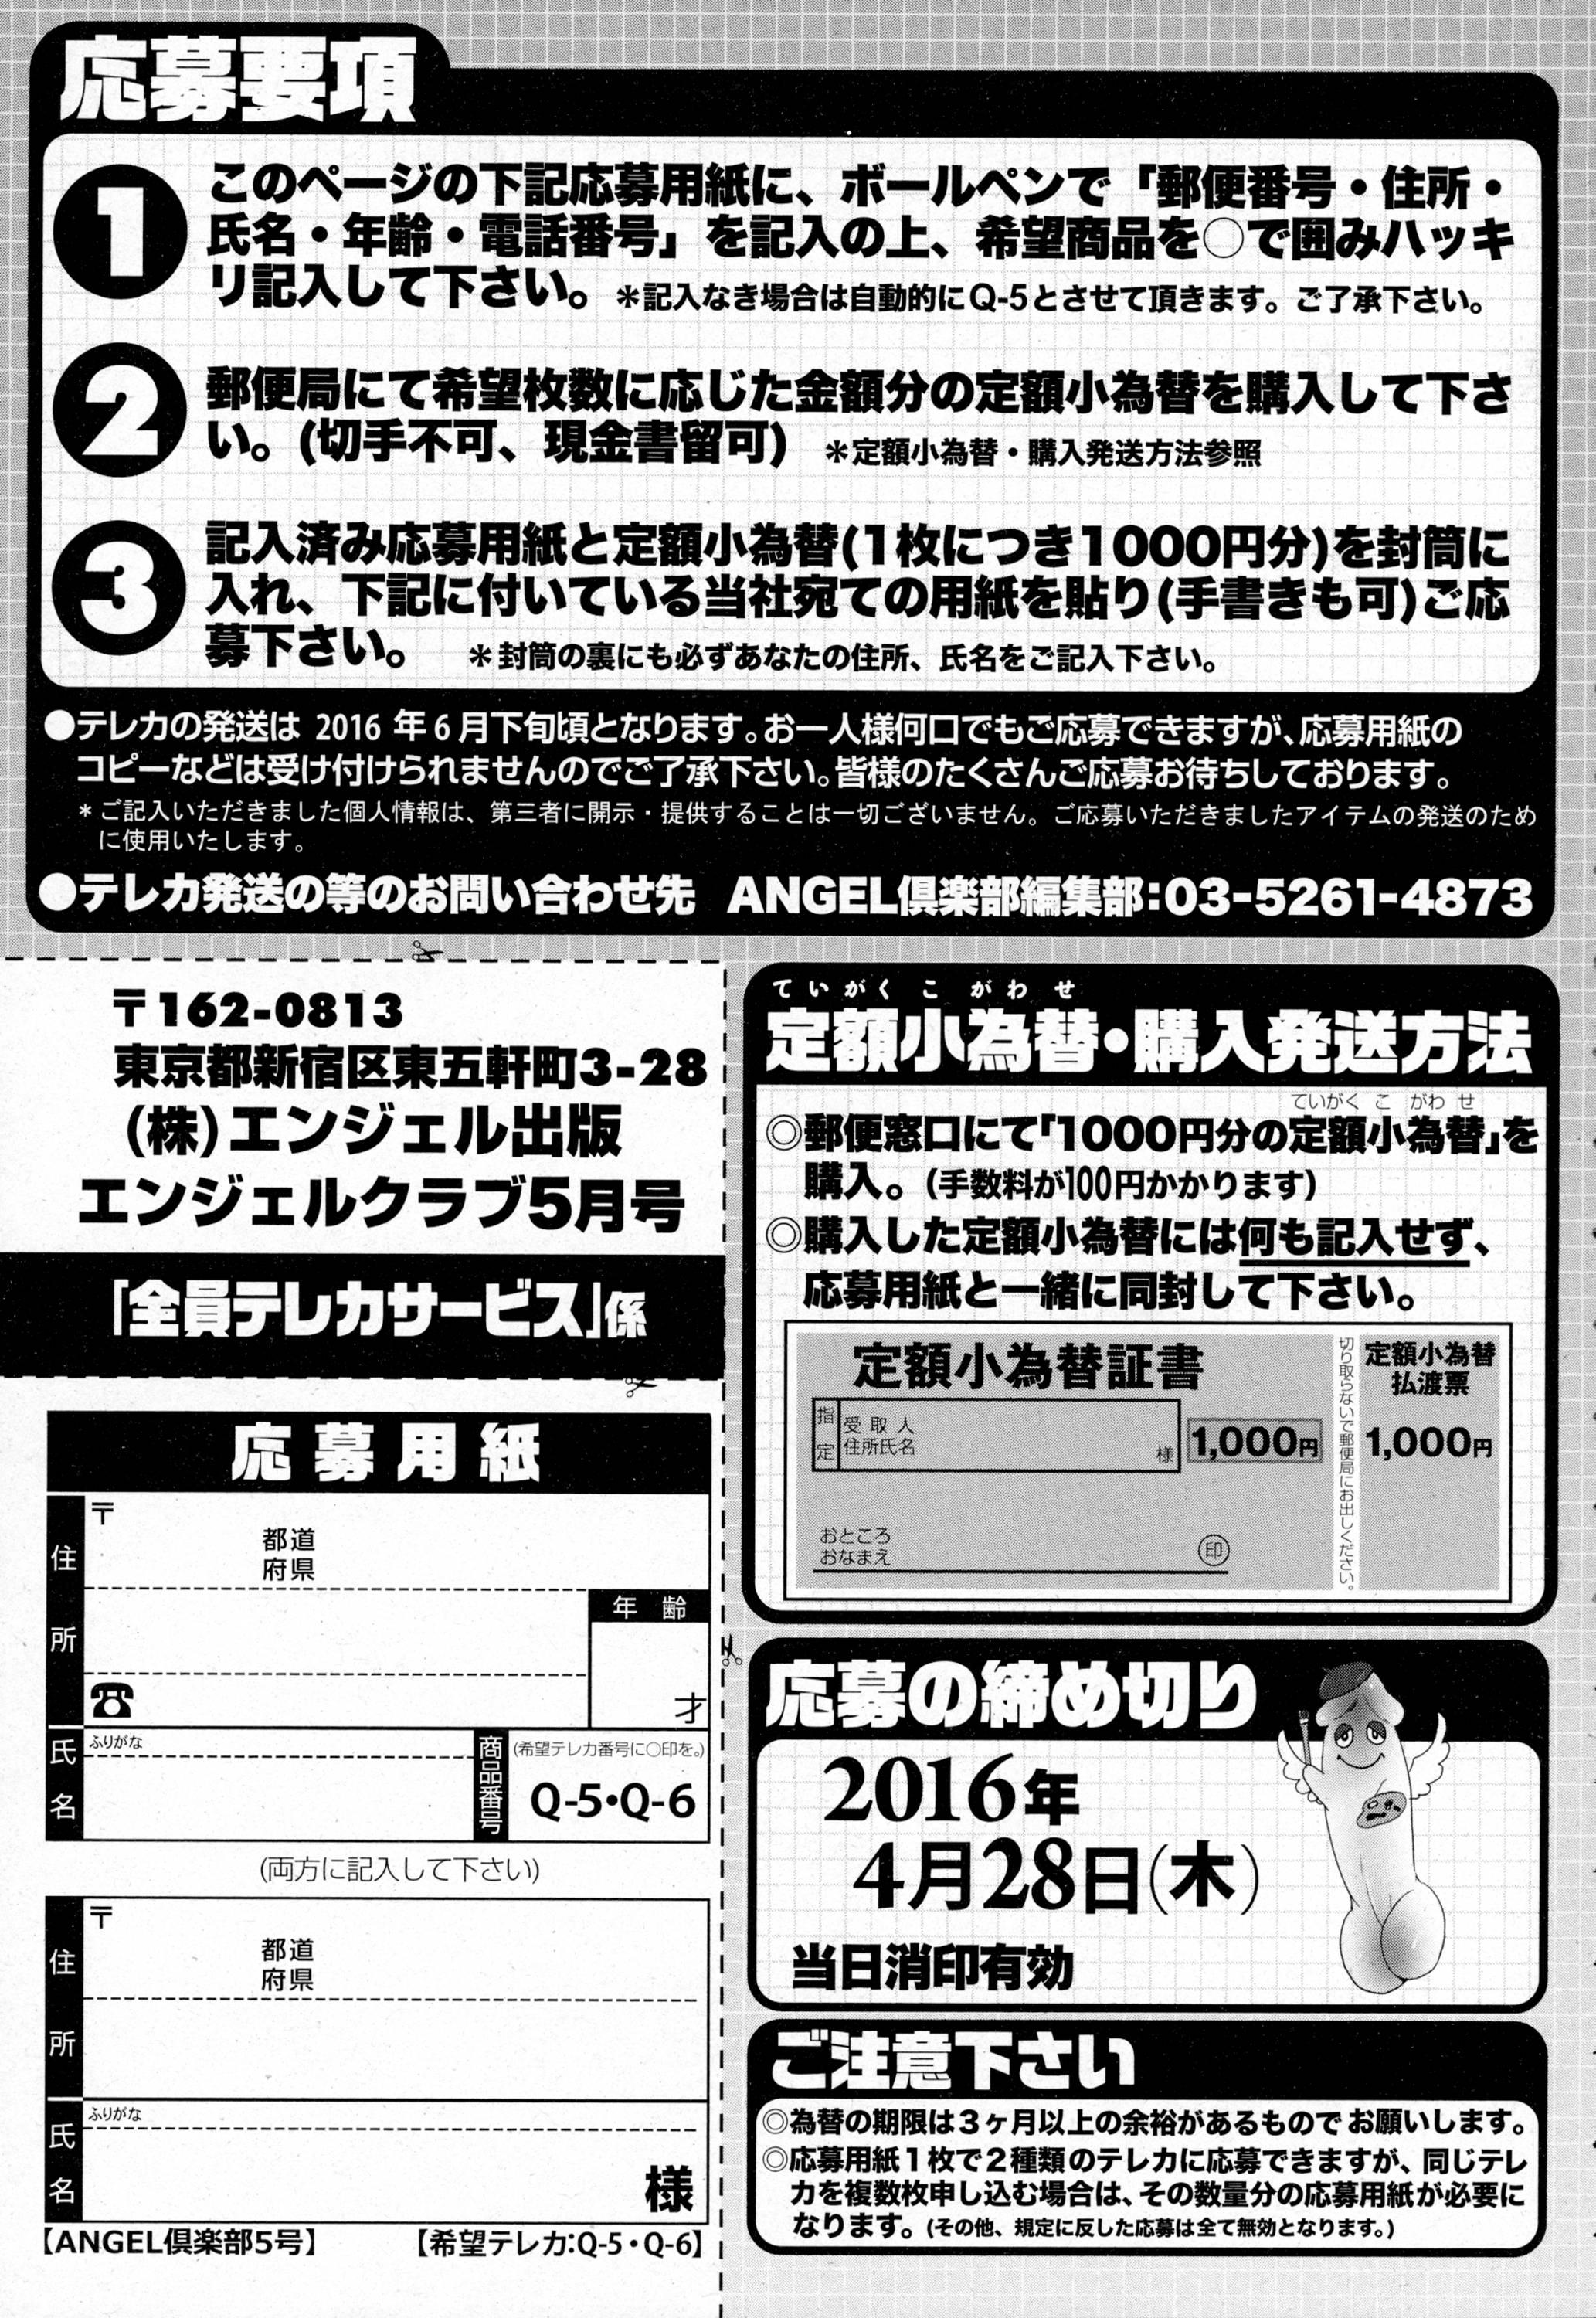 ANGEL Club 2016-05 206